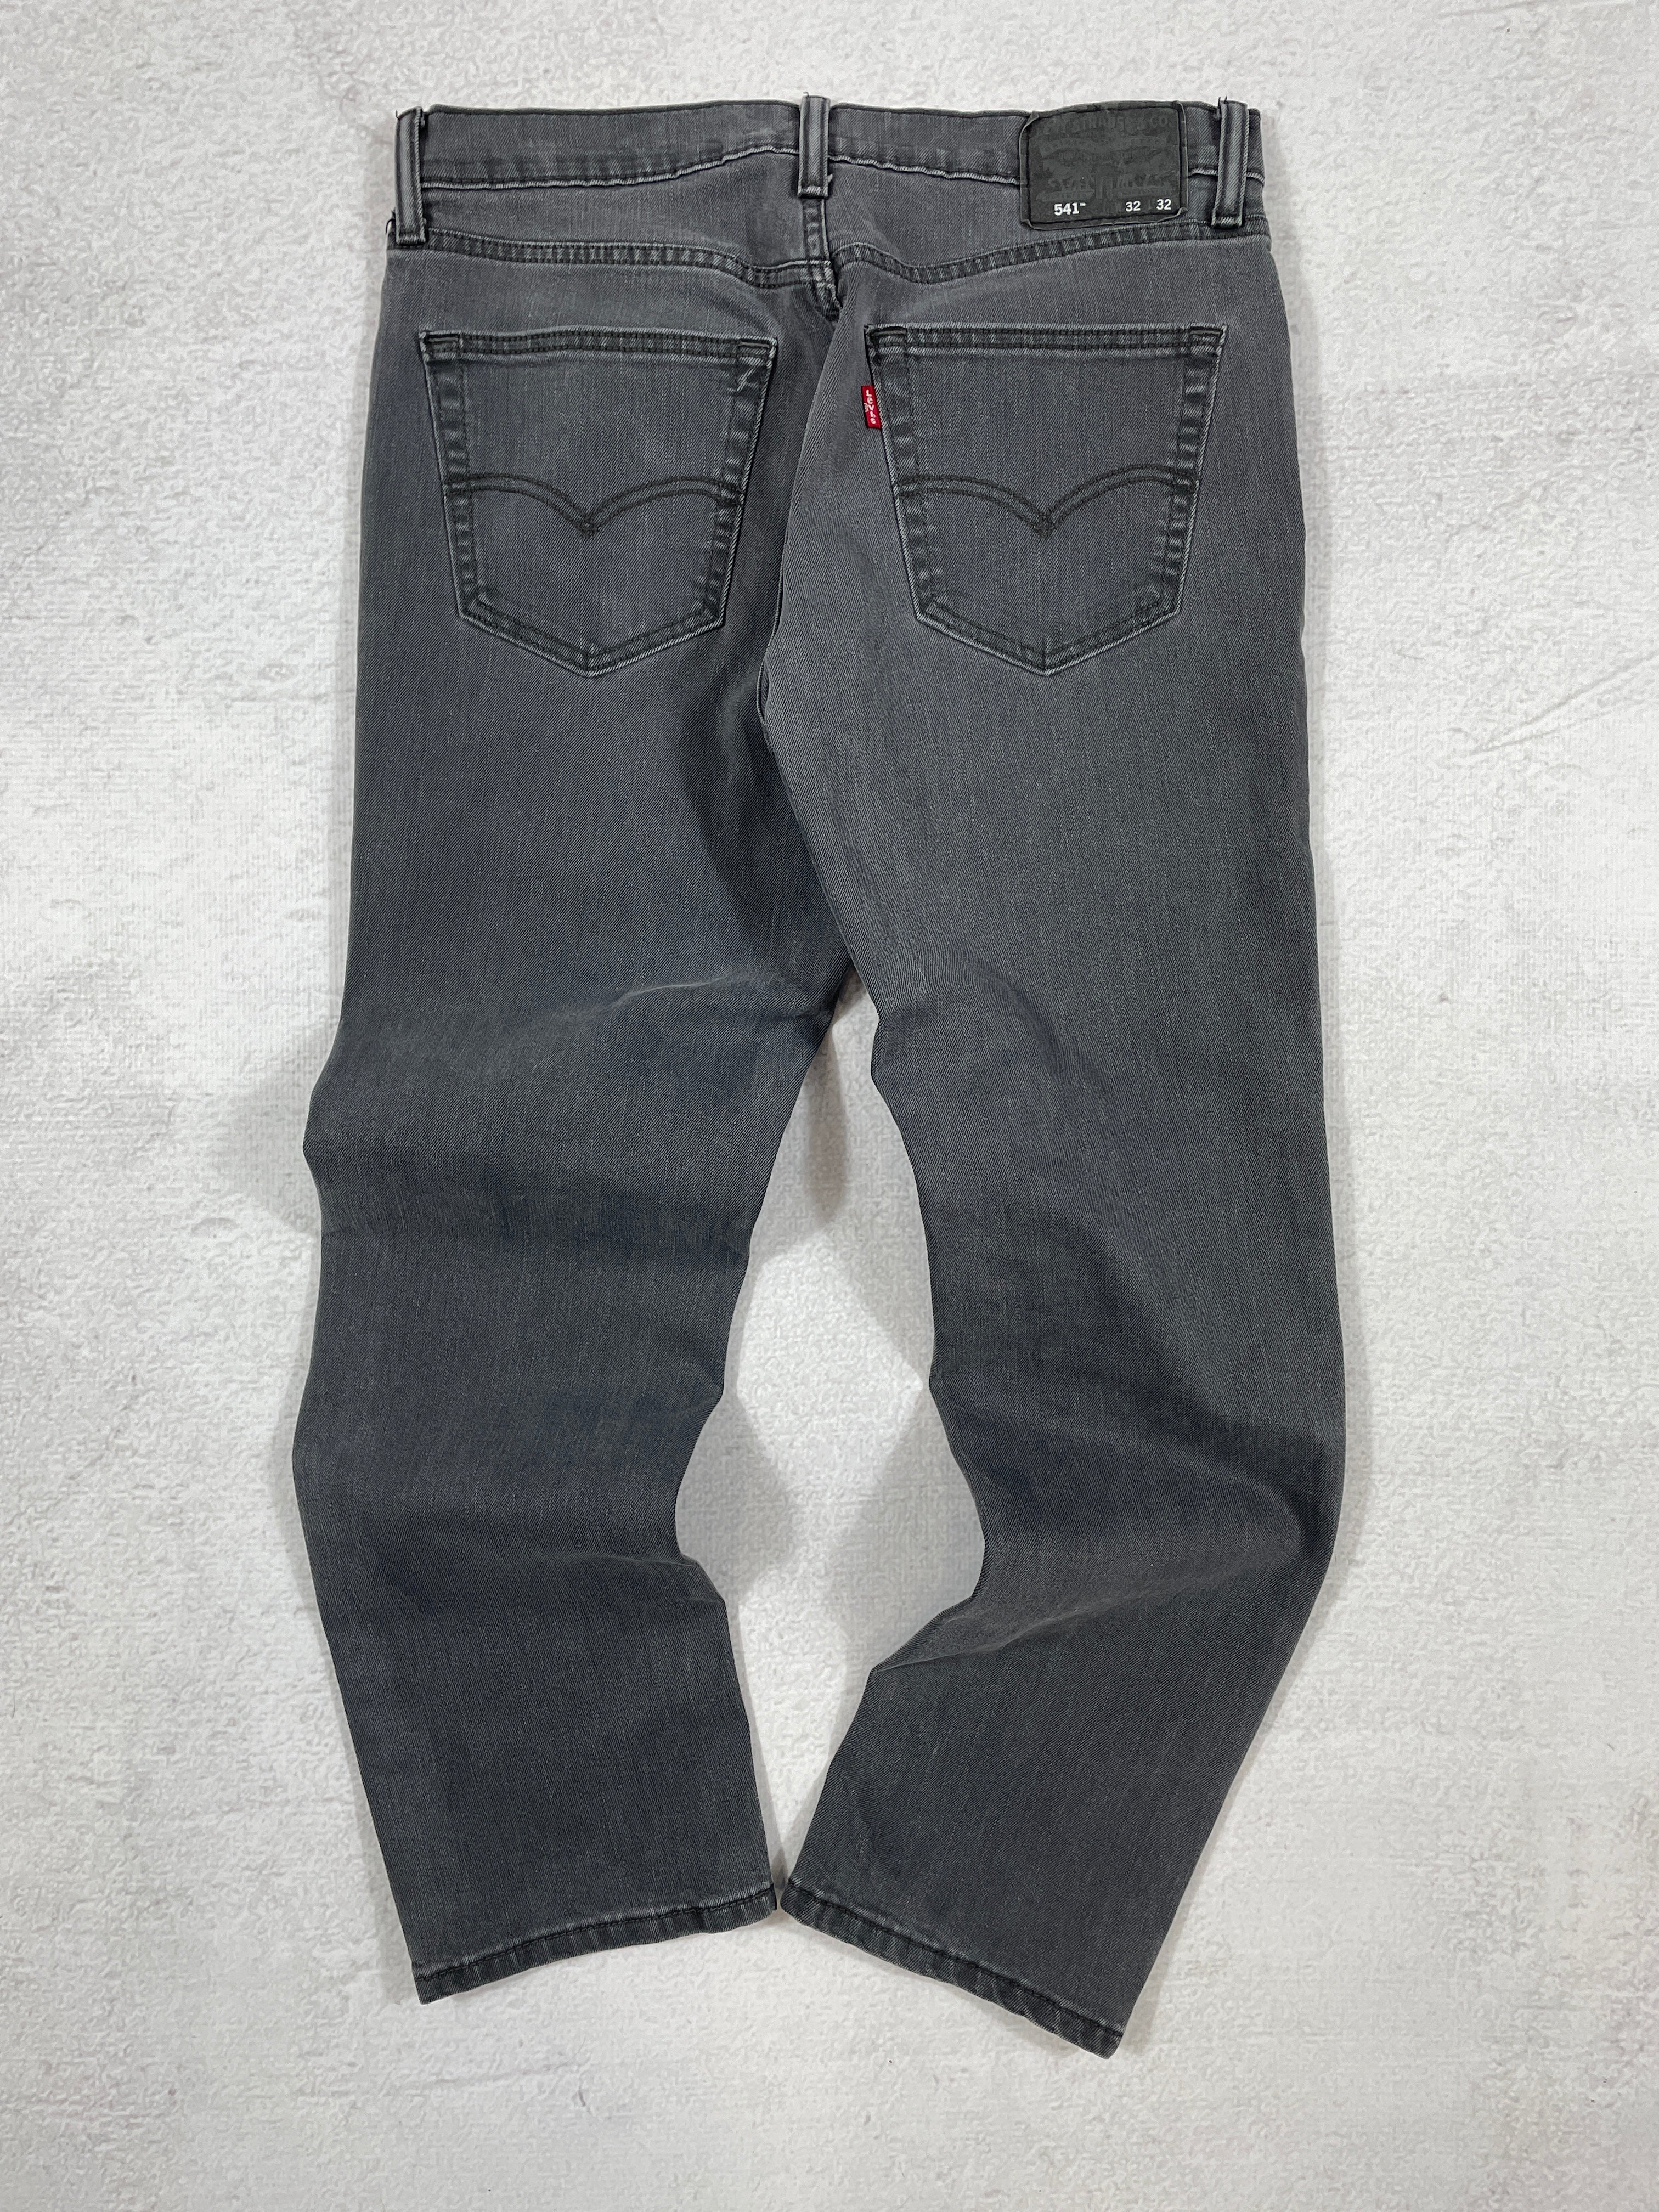 Vintage Levis 541 Jeans - Men's 32Wx32L